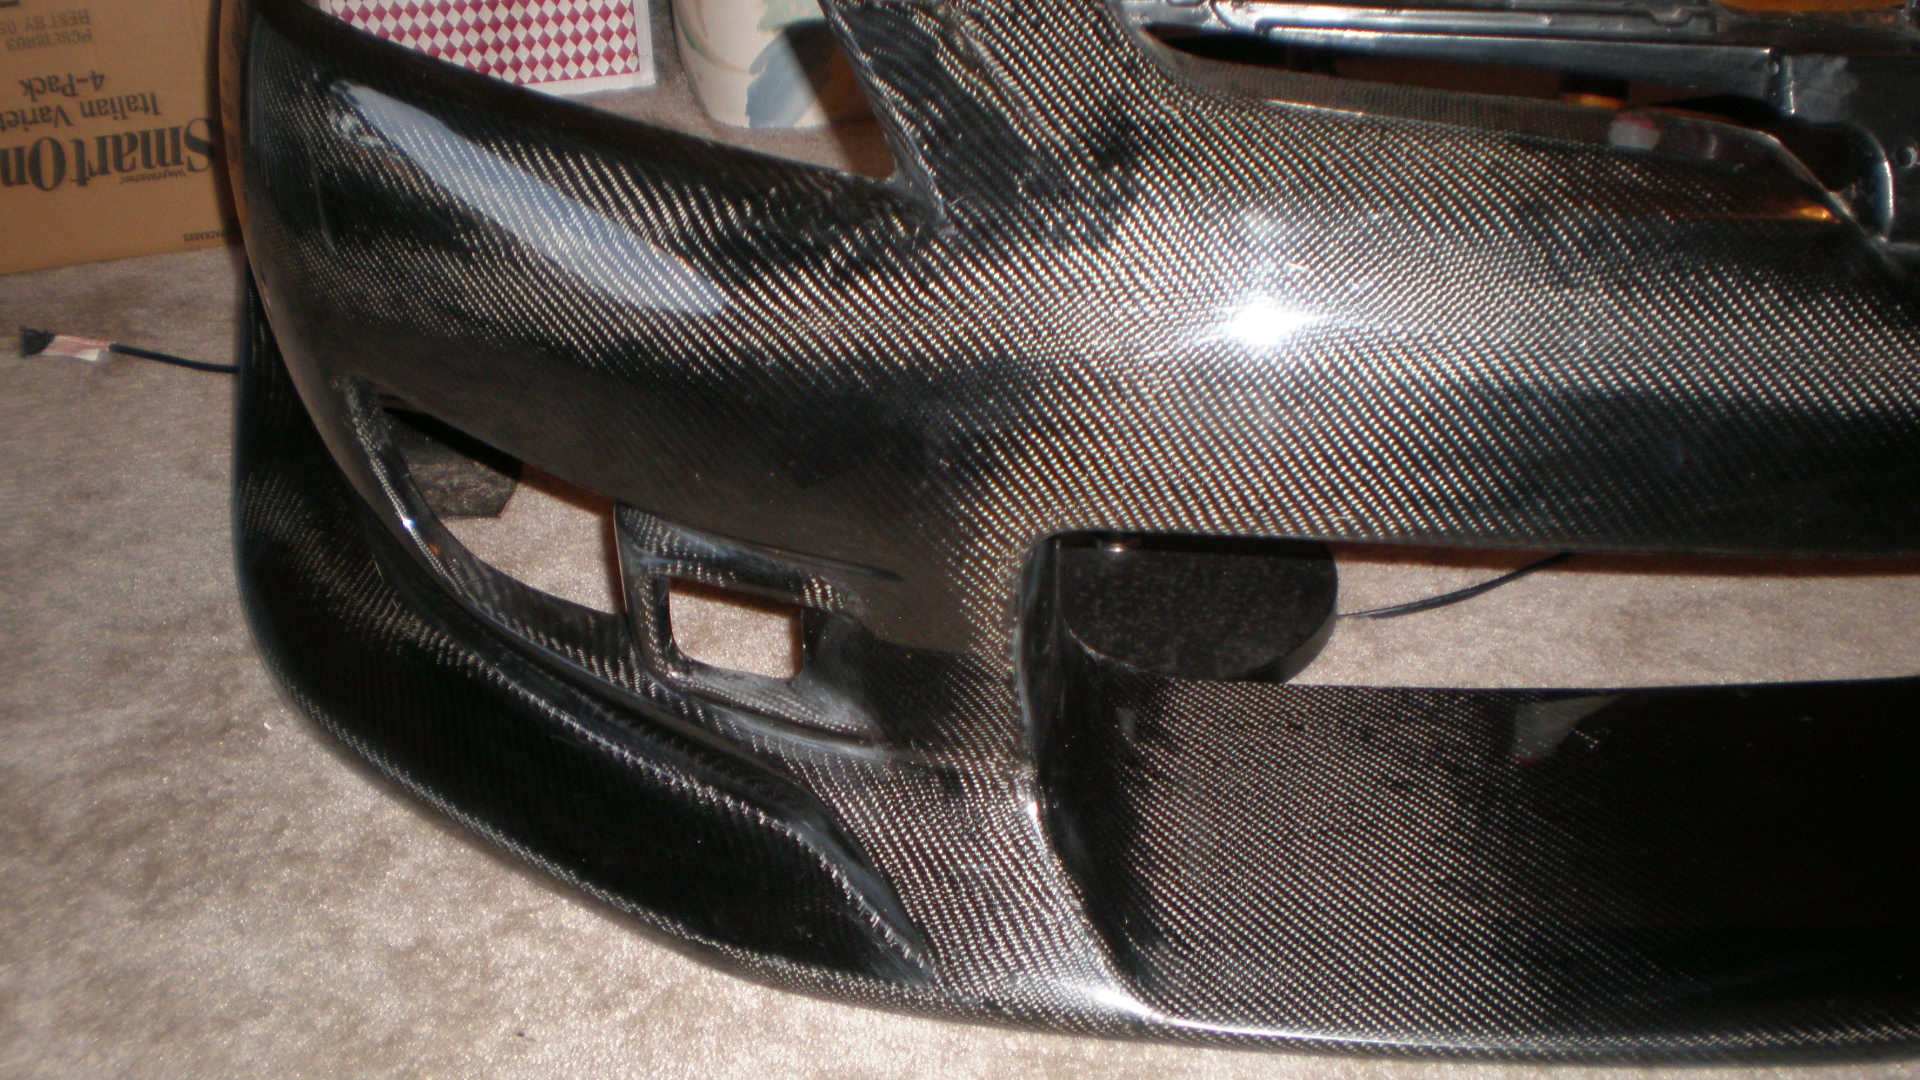 Honda delsol carbon fiber bumber #4